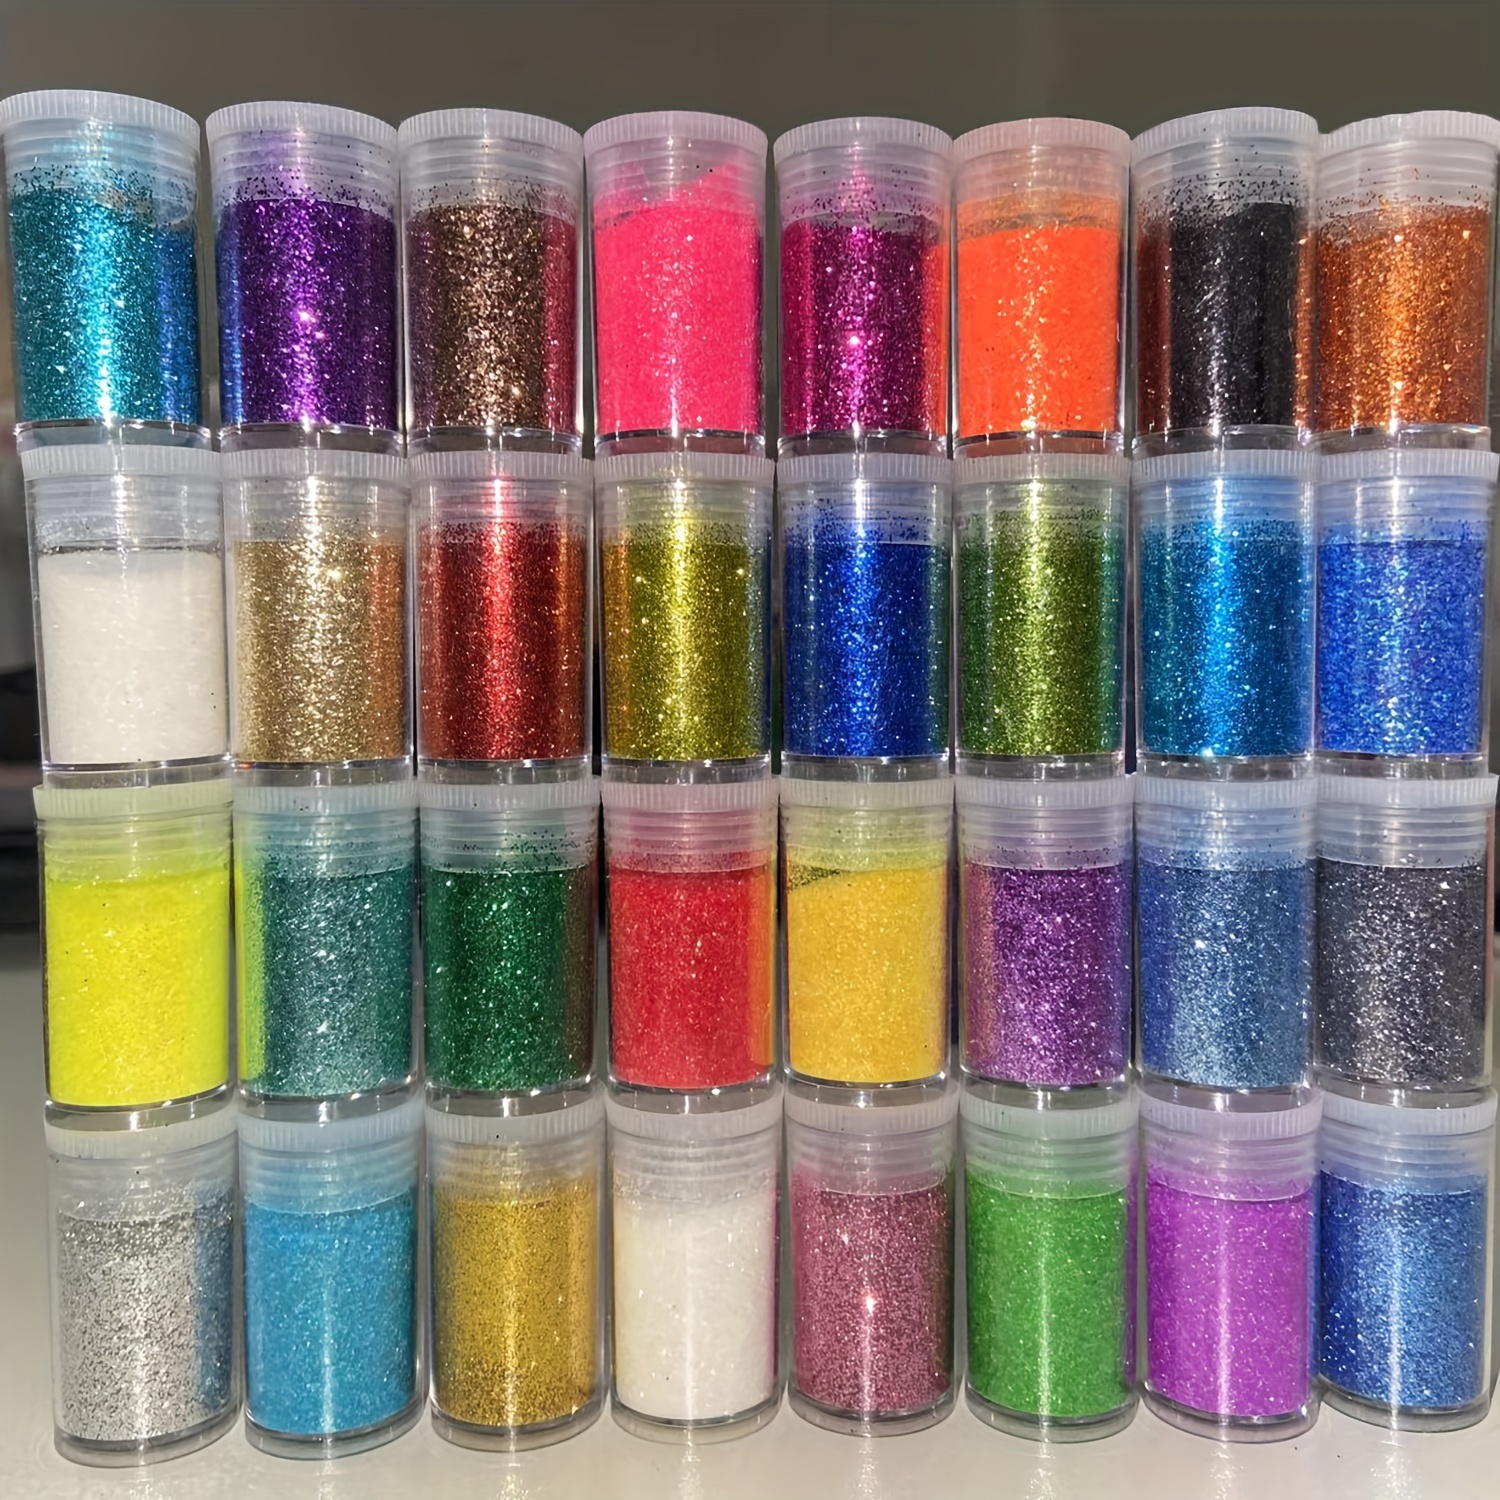 Craft Glitter Powder Assortment, Fine Loose Glitter for Nail Art Deco, MiniatureSweet, Kawaii Resin Crafts, Decoden Cabochons Supplies